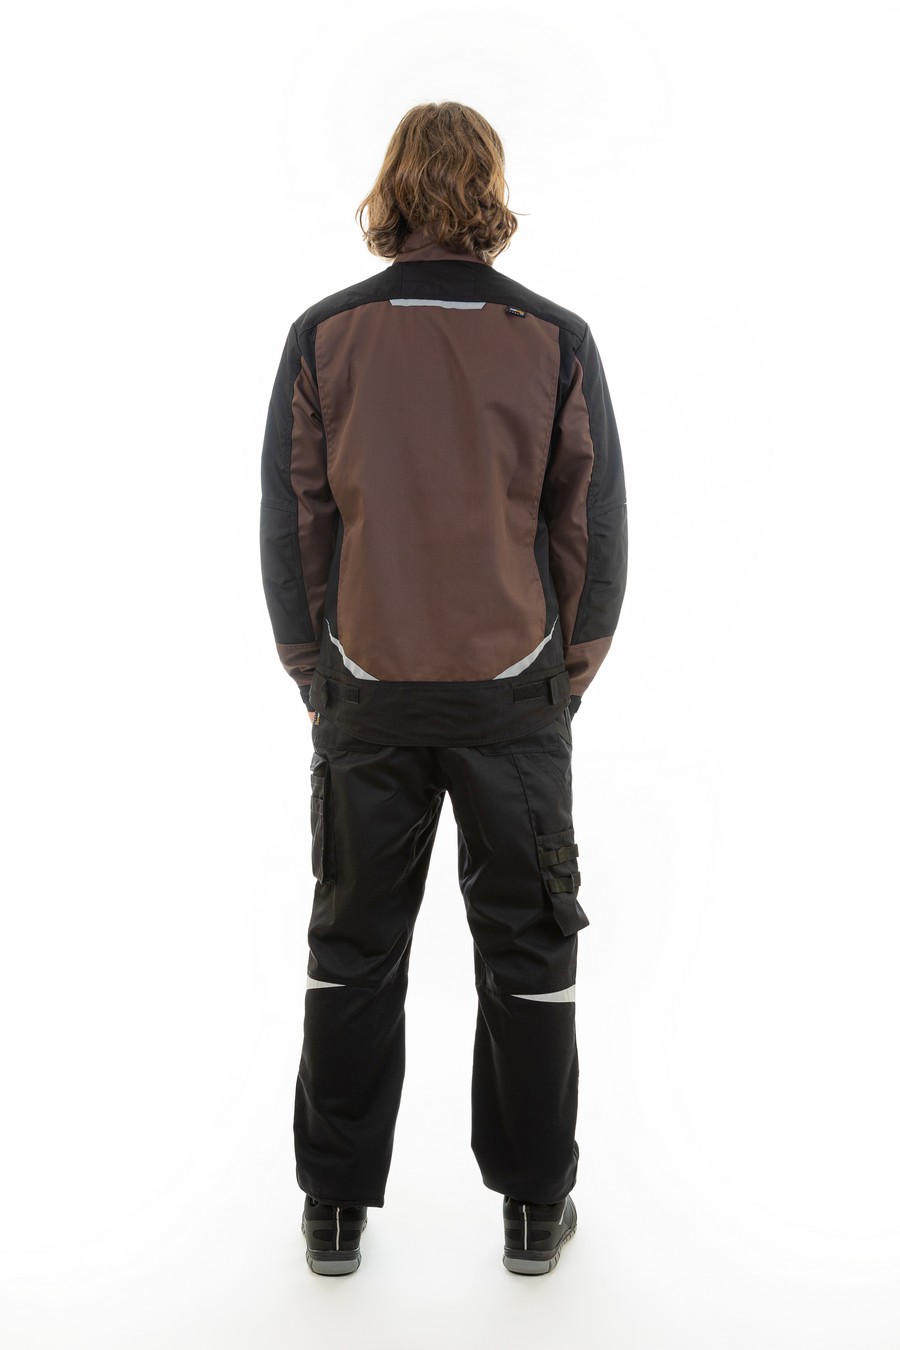 Куртка BRODEKS KS202, коричневый/черный